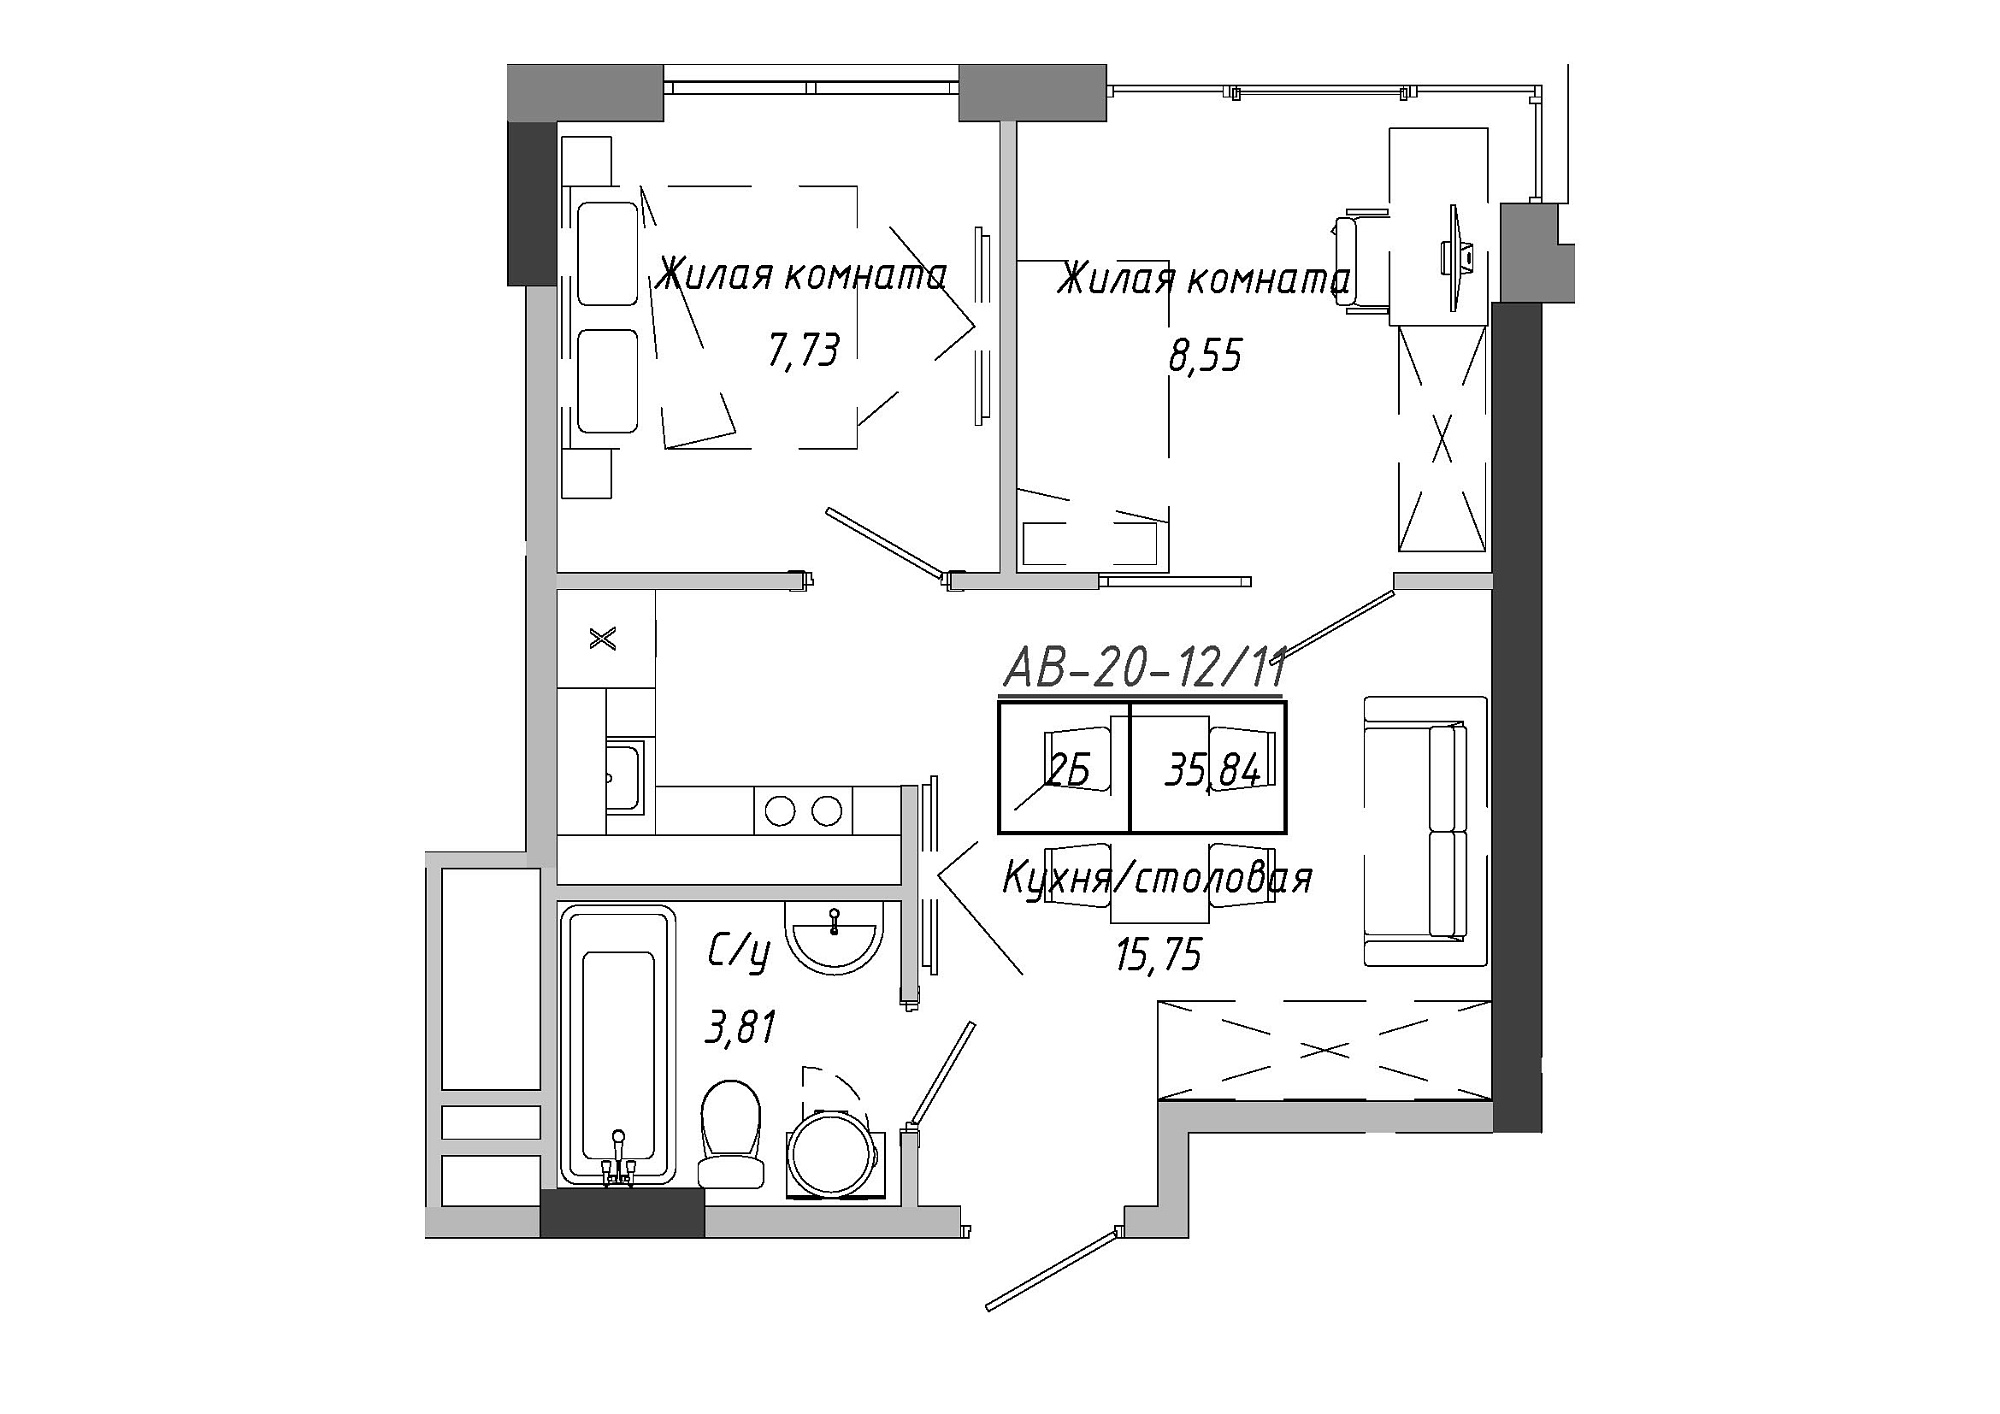 Планировка 2-к квартира площей 36.12м2, AB-20-12/00011.